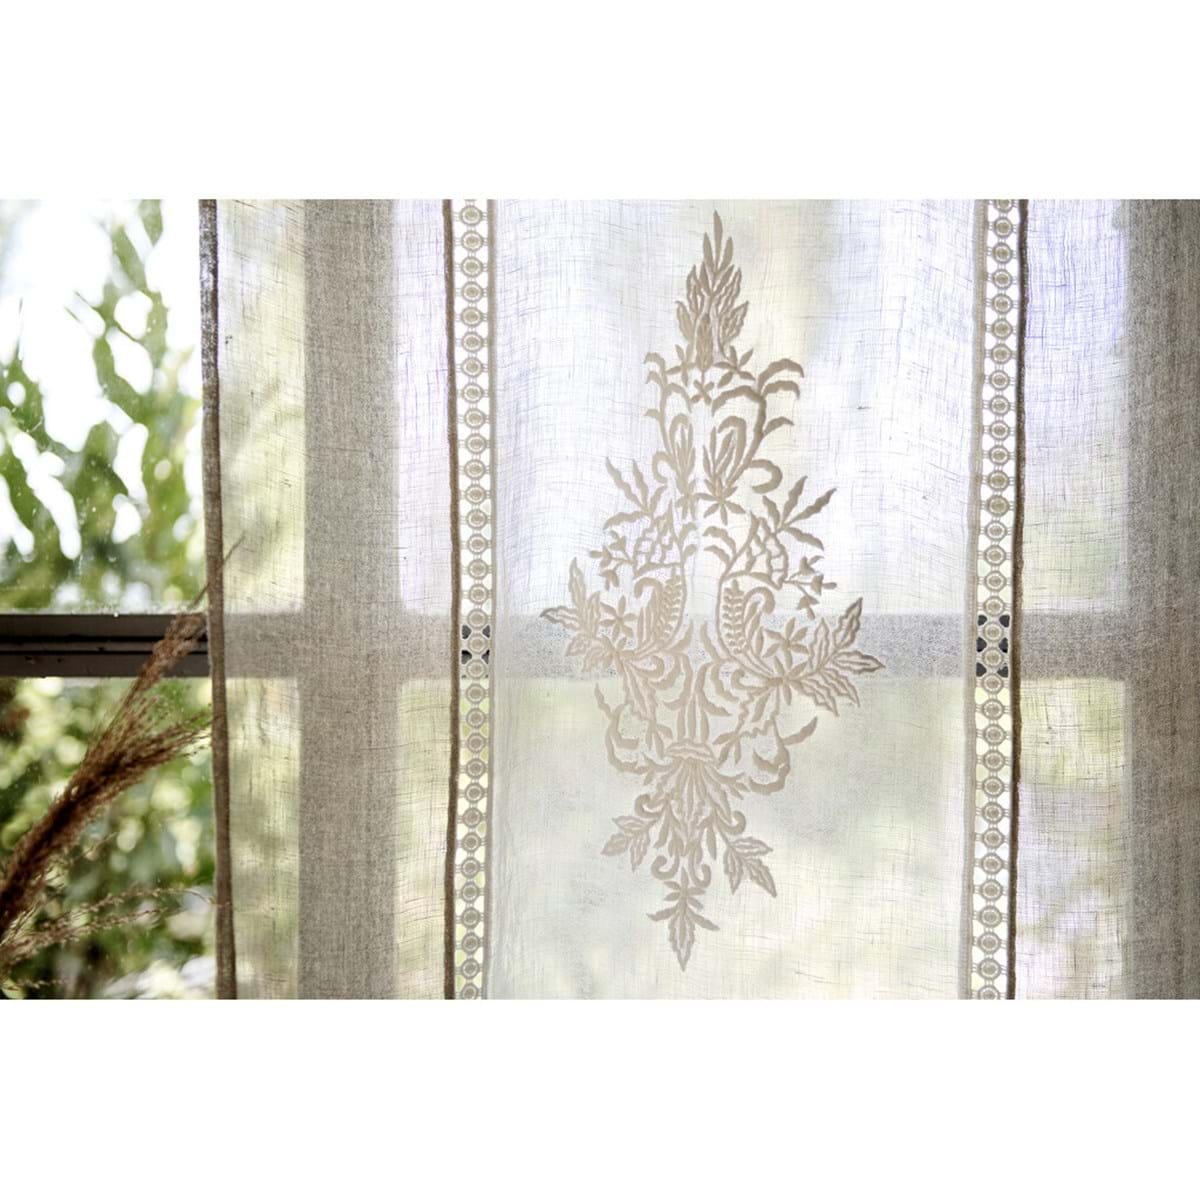 Tenda portafinestra in tulle ricamato serie Romantic flowers cm. 90 x 240  h. colore bianco